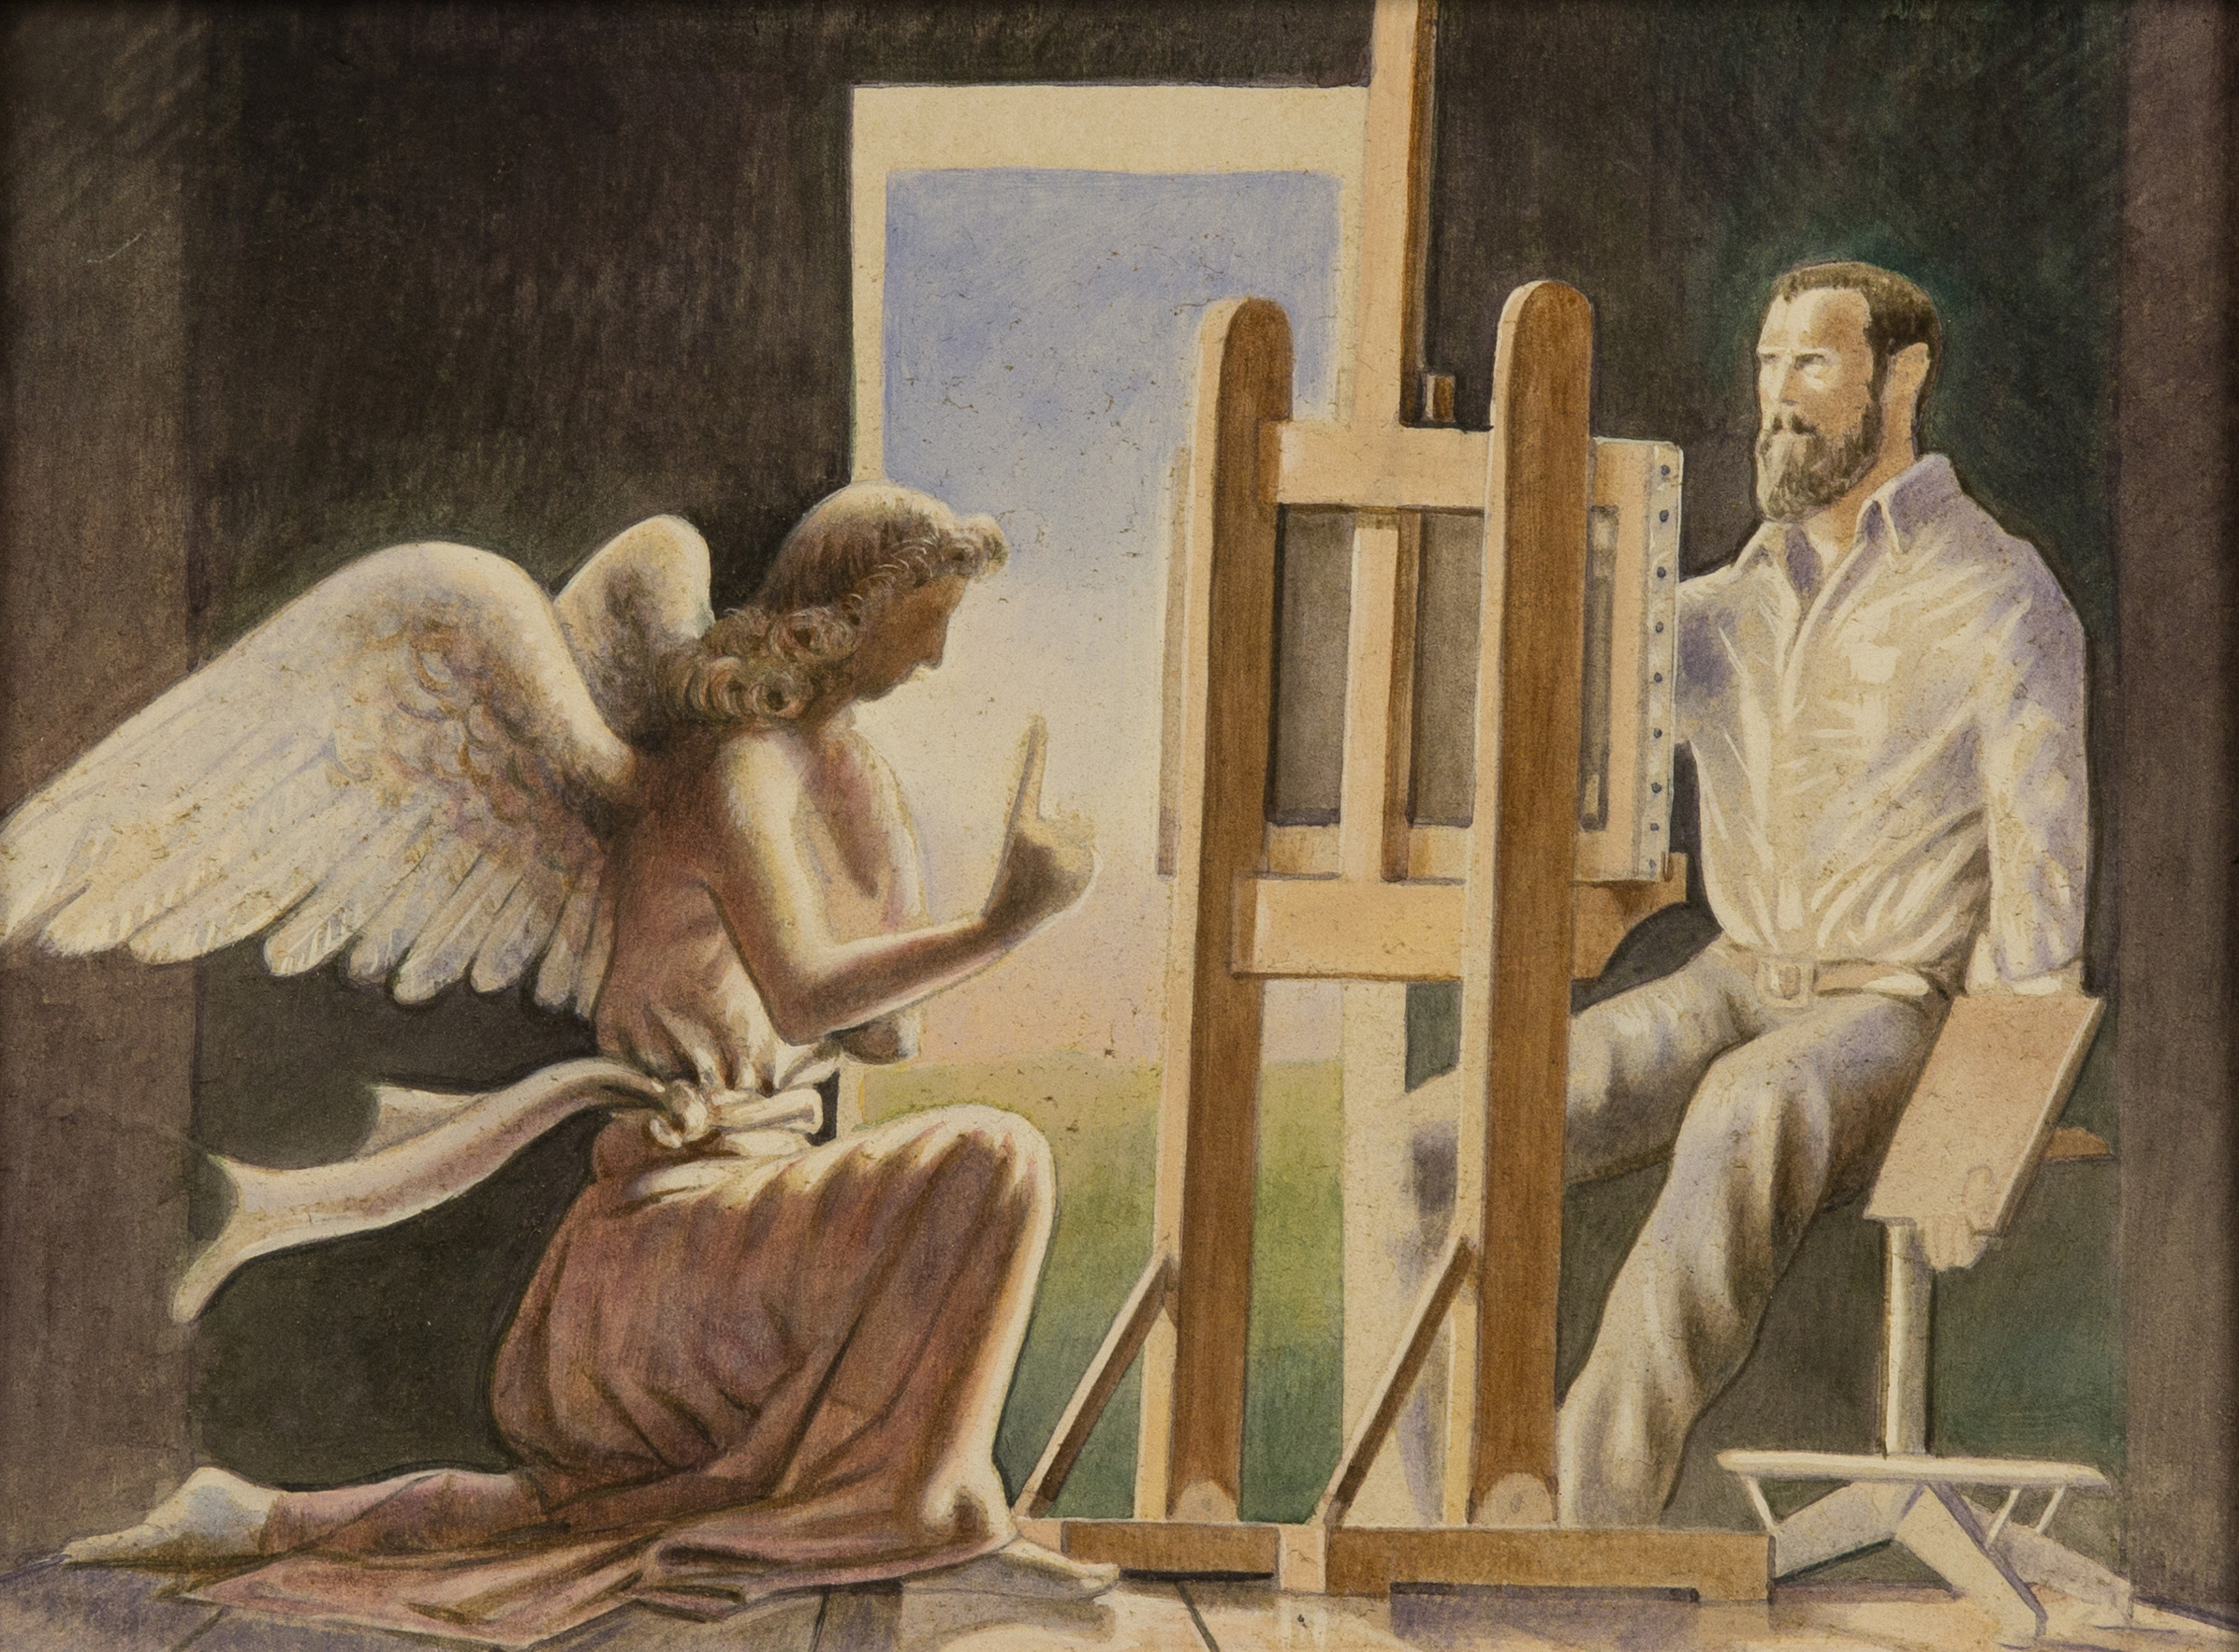   L’angelo nello studio dell’artista , acquerello su tavola, cm 18x24, 2004 